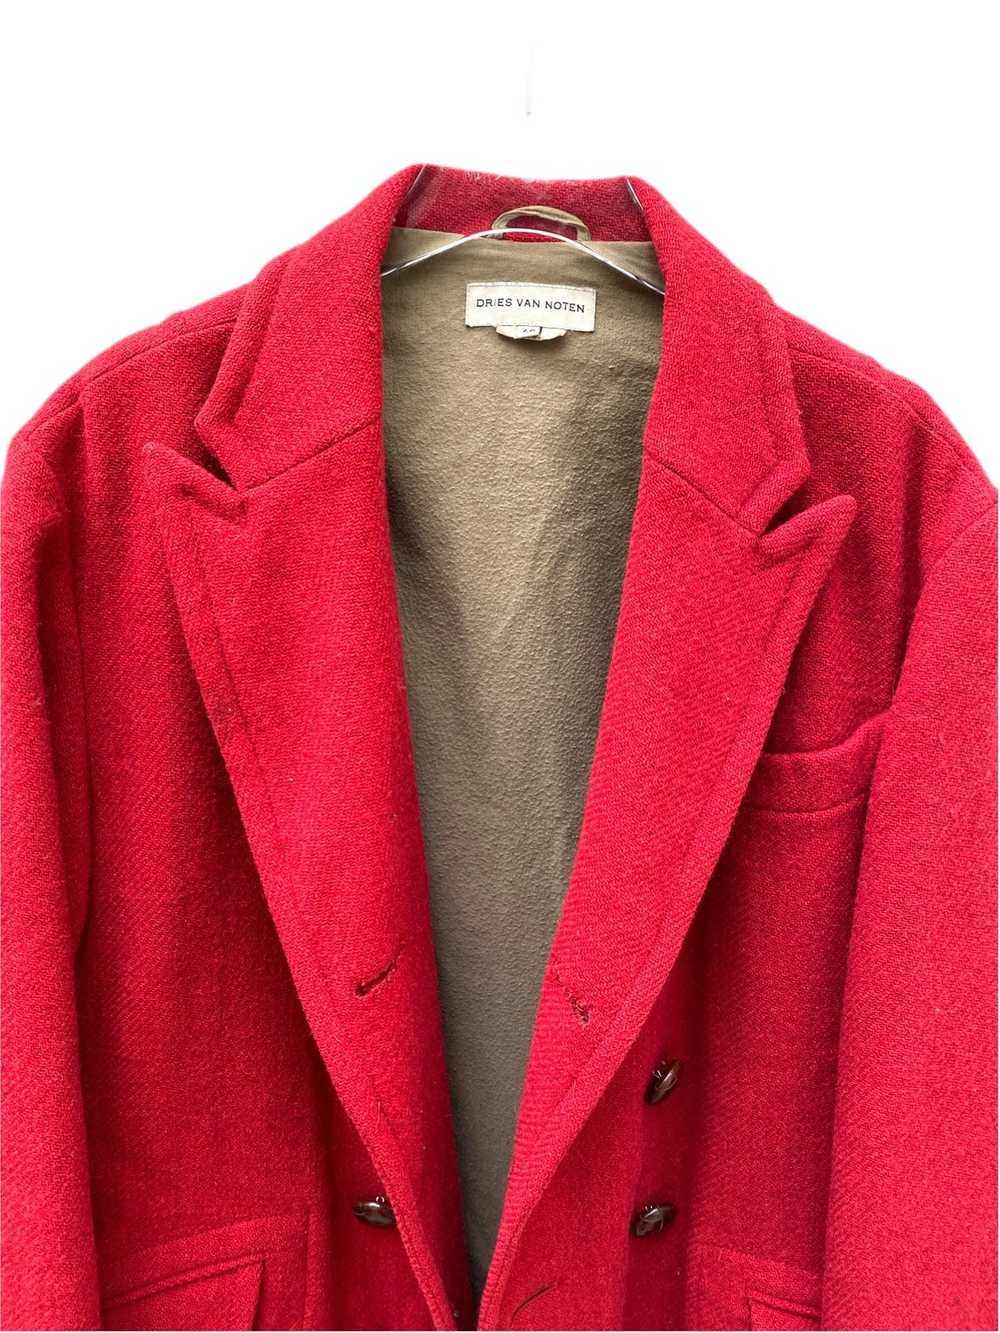 Dries Van Noten Red Wool Peacoat - image 2